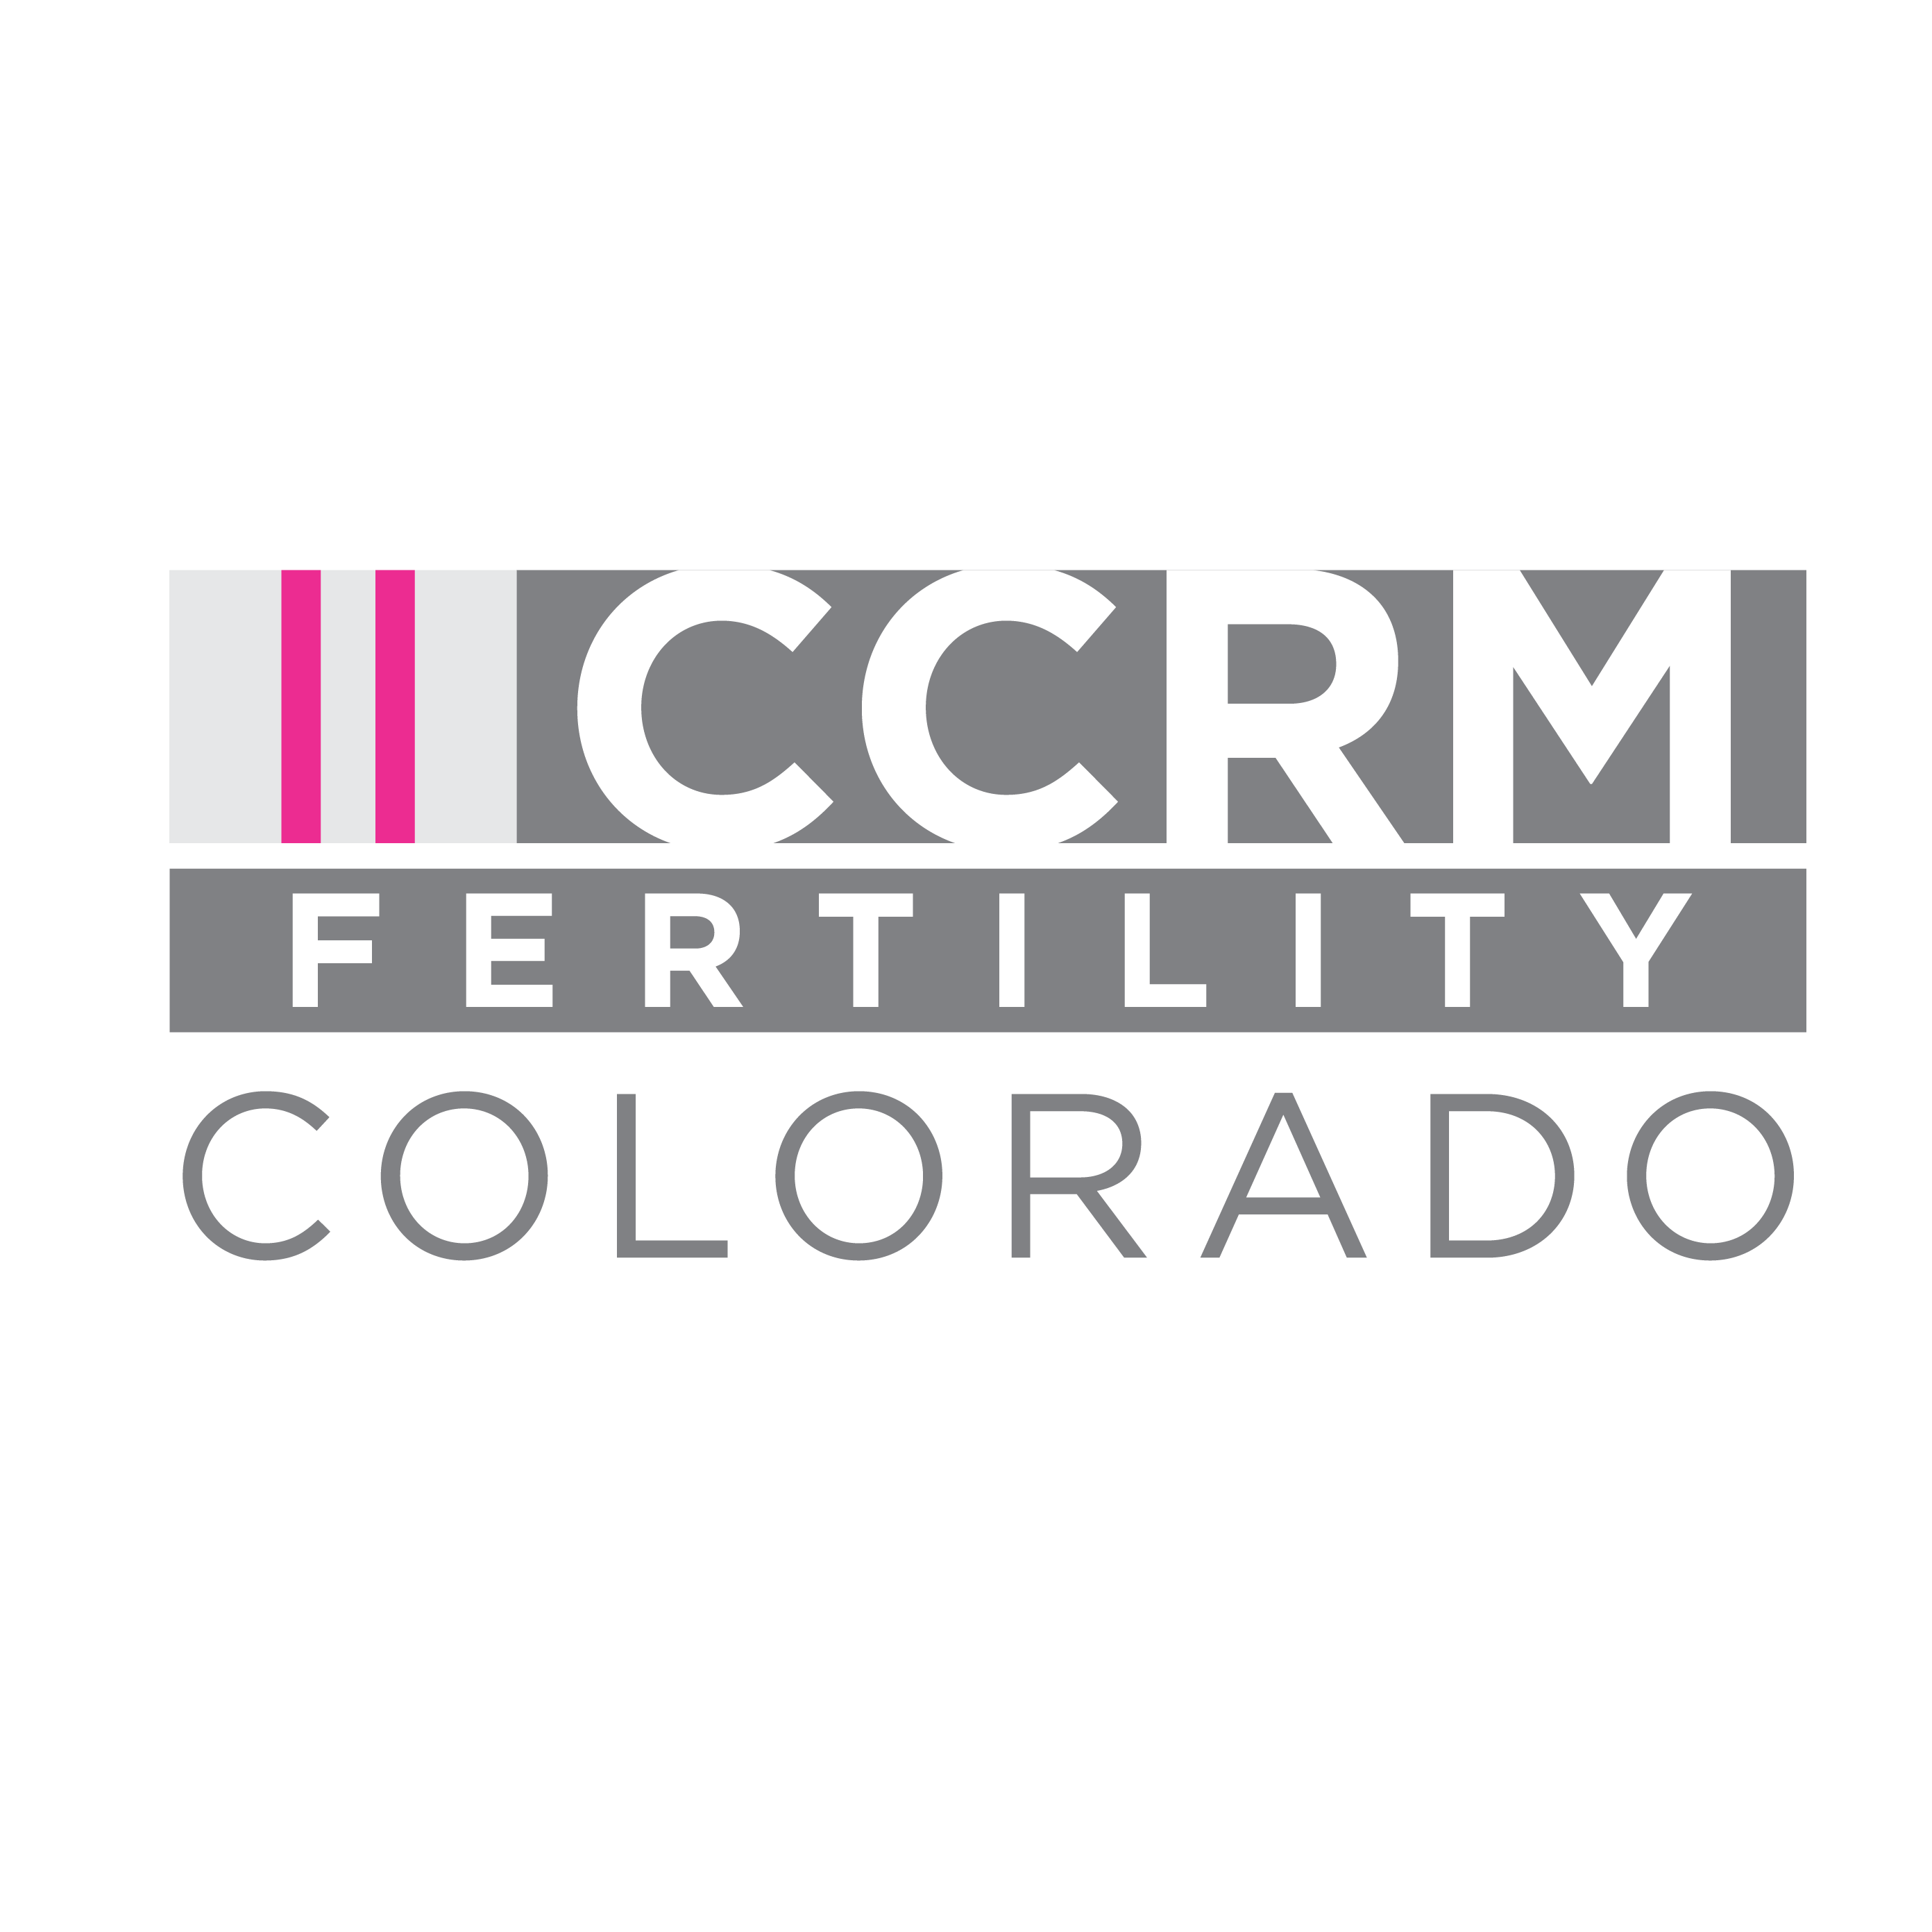 Colorado Center for Reproductive Medicine (CCRM)